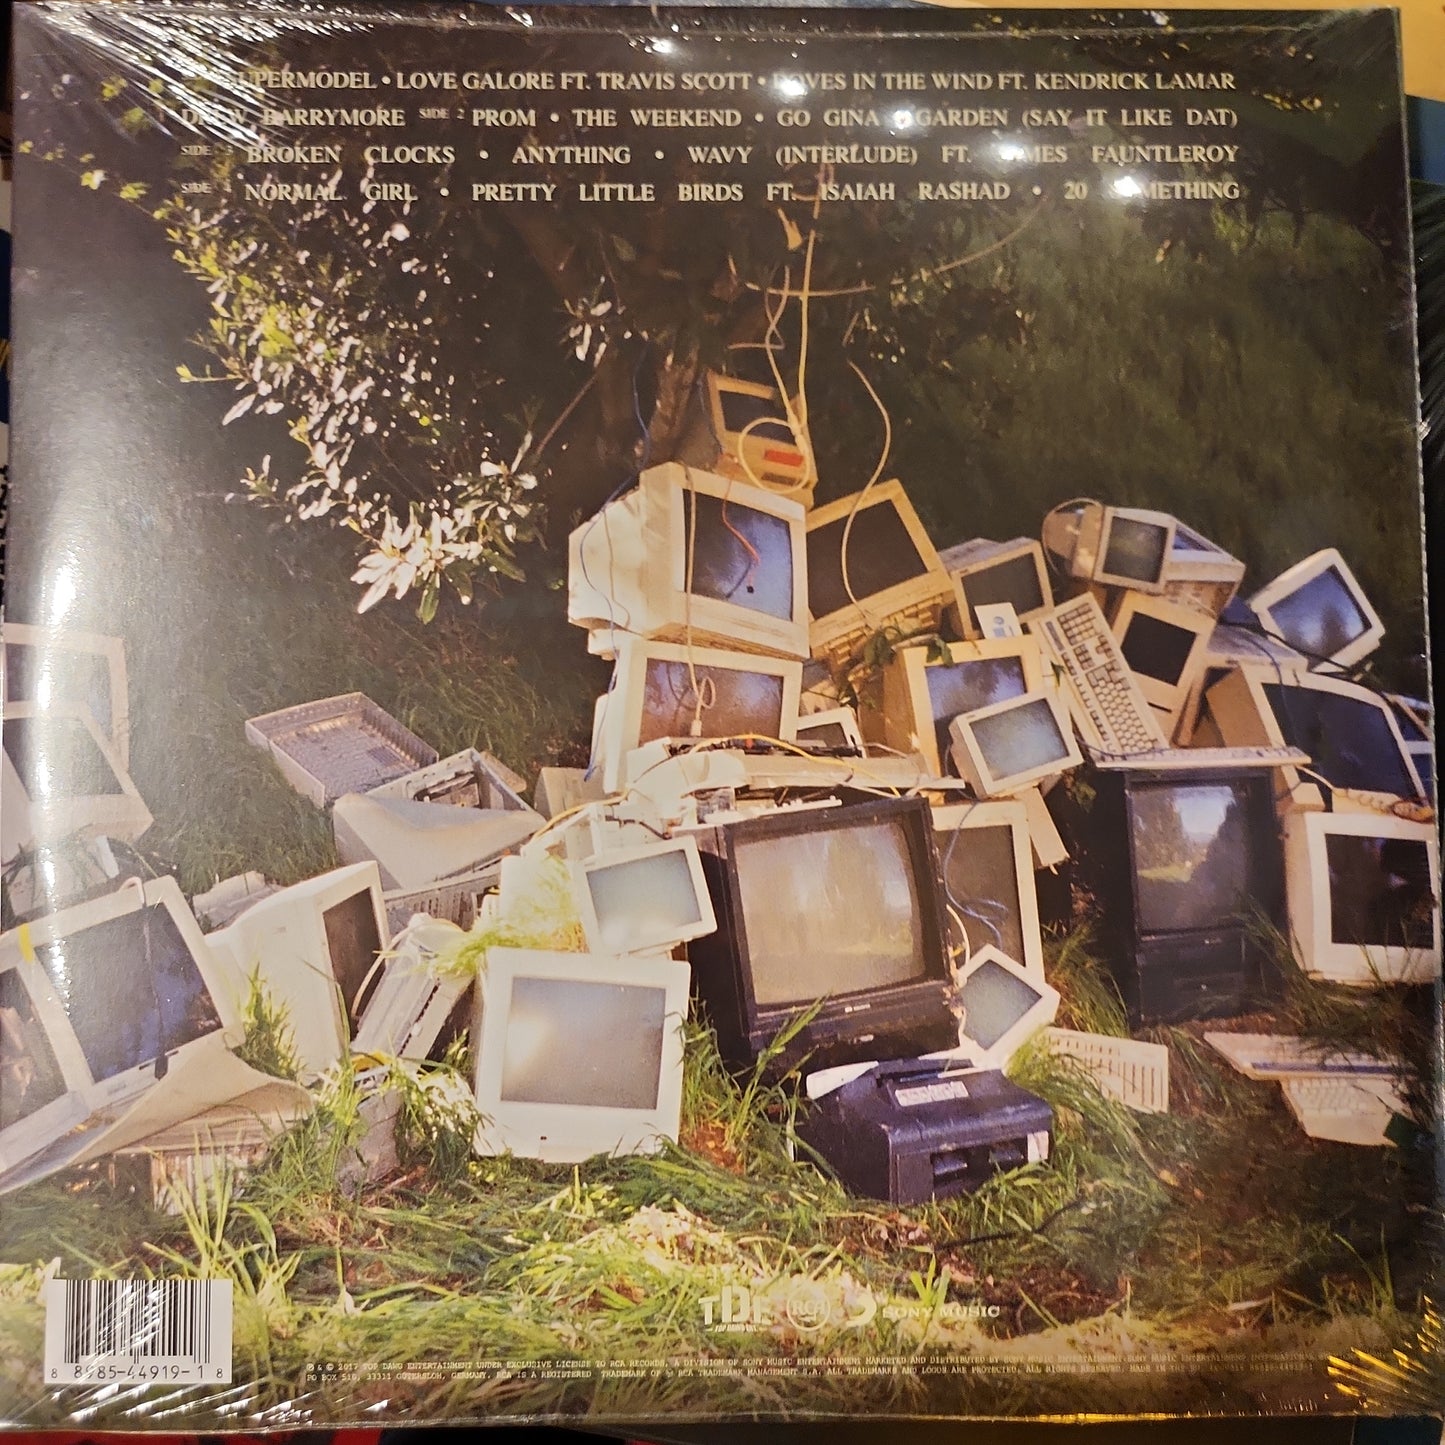 SZA - CTRL - Vinyl LP